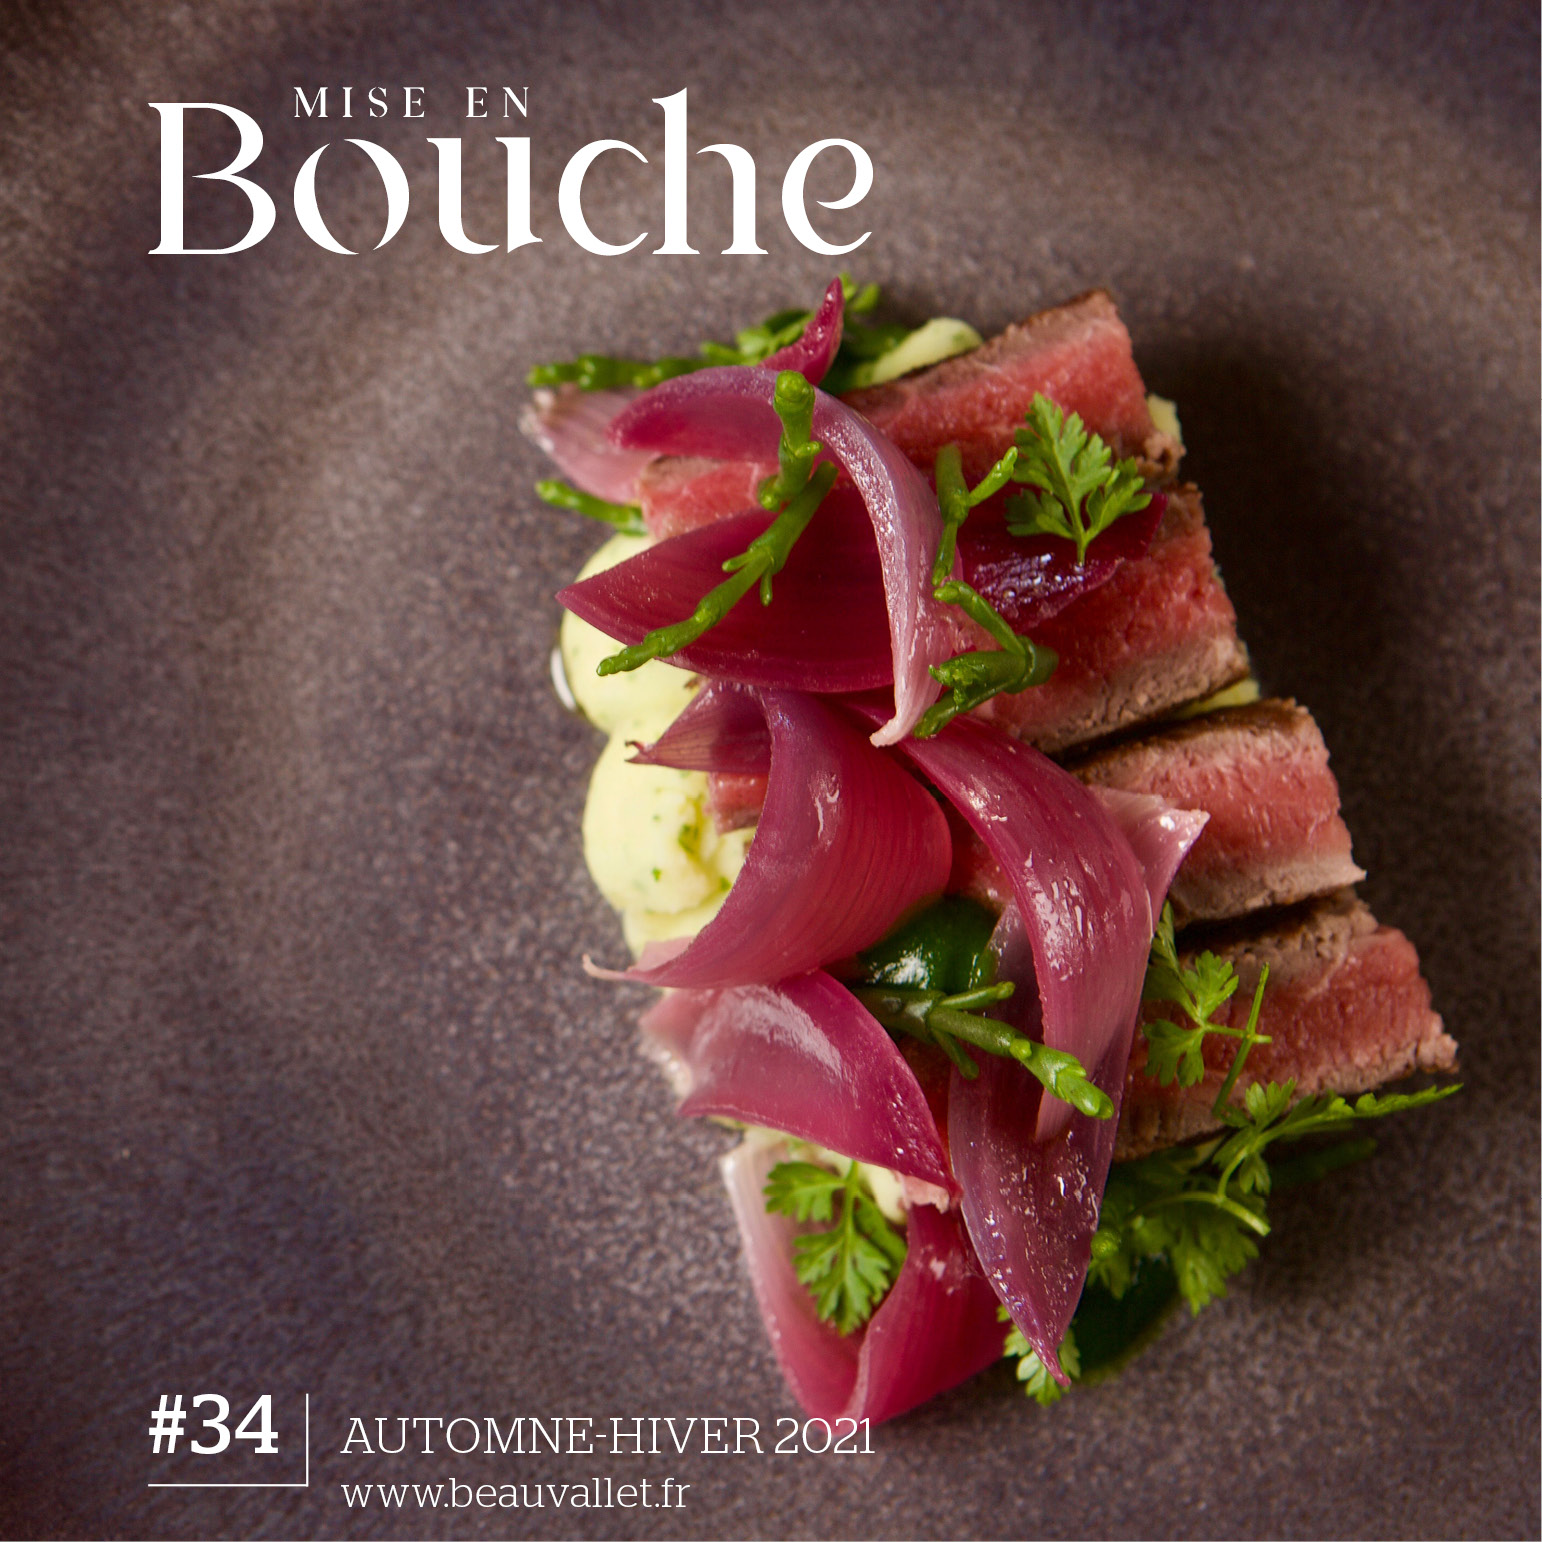 Nueva Revista “Mise en Bouche” Otoño / Invierno 2021 de Beauvallet